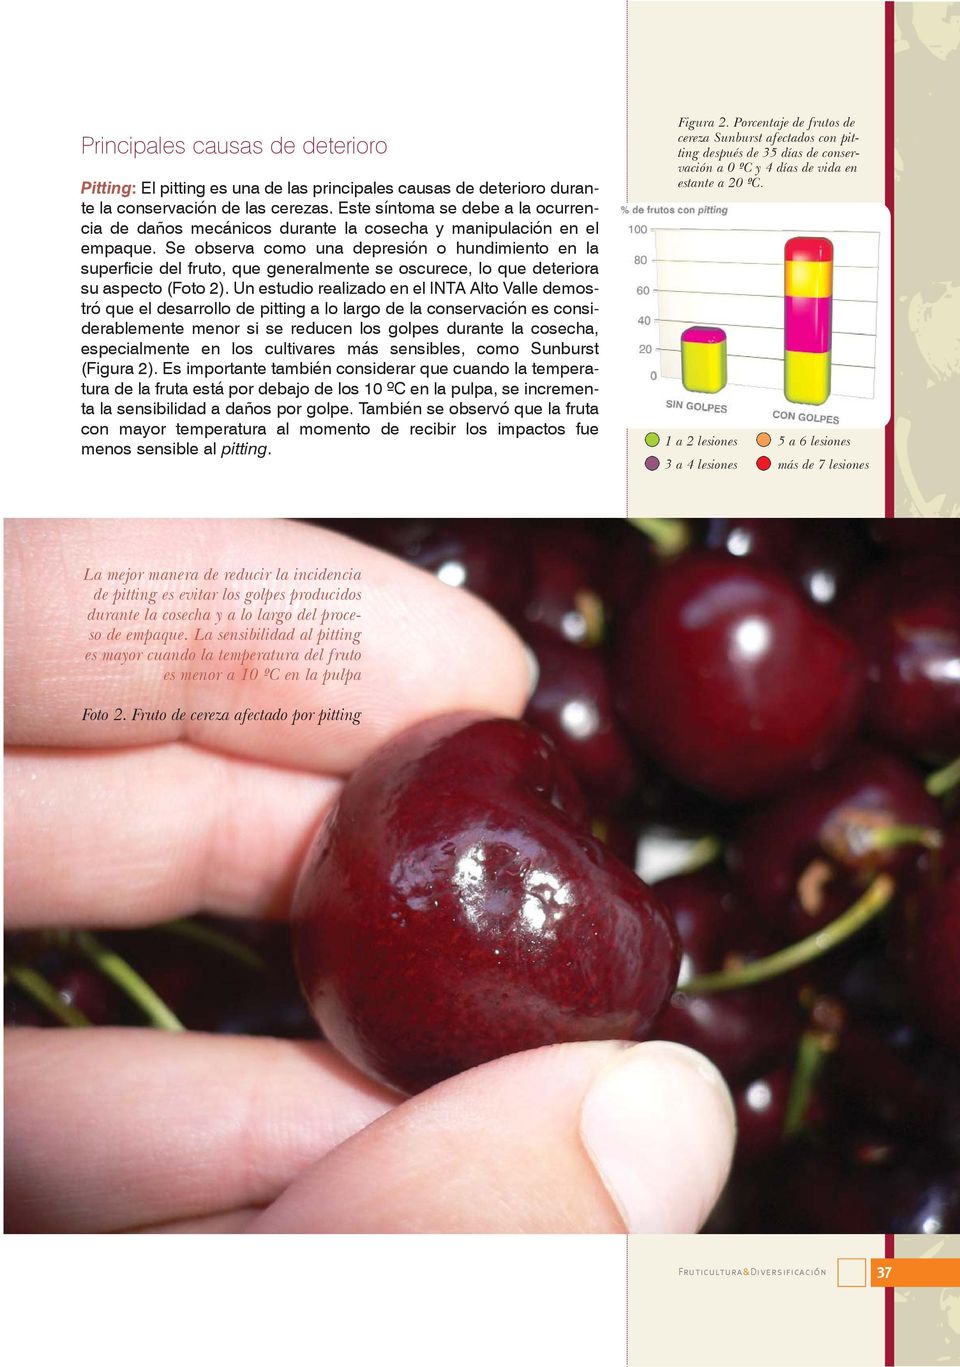 Se observa como una depresión o hundimiento en la superficie del fruto, que generalmente se oscurece, lo que deteriora su aspecto (Foto 2).